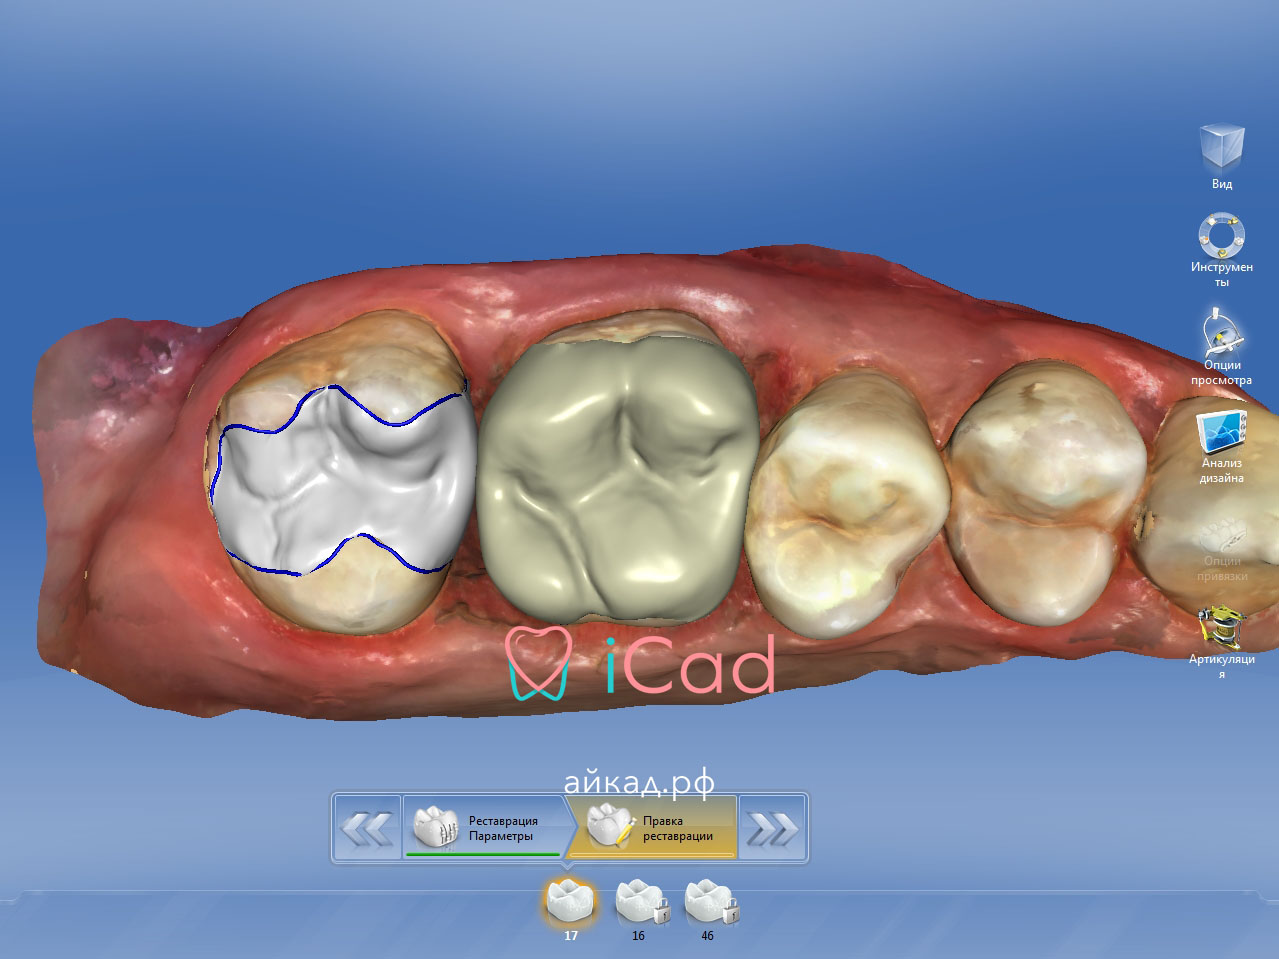 cad cam системы в стоматологии, современные cad cam, кад кам системы в стоматологии, обучение cam системам, айкад.рф, icad.store, продажа стоматологического оборудования, москва